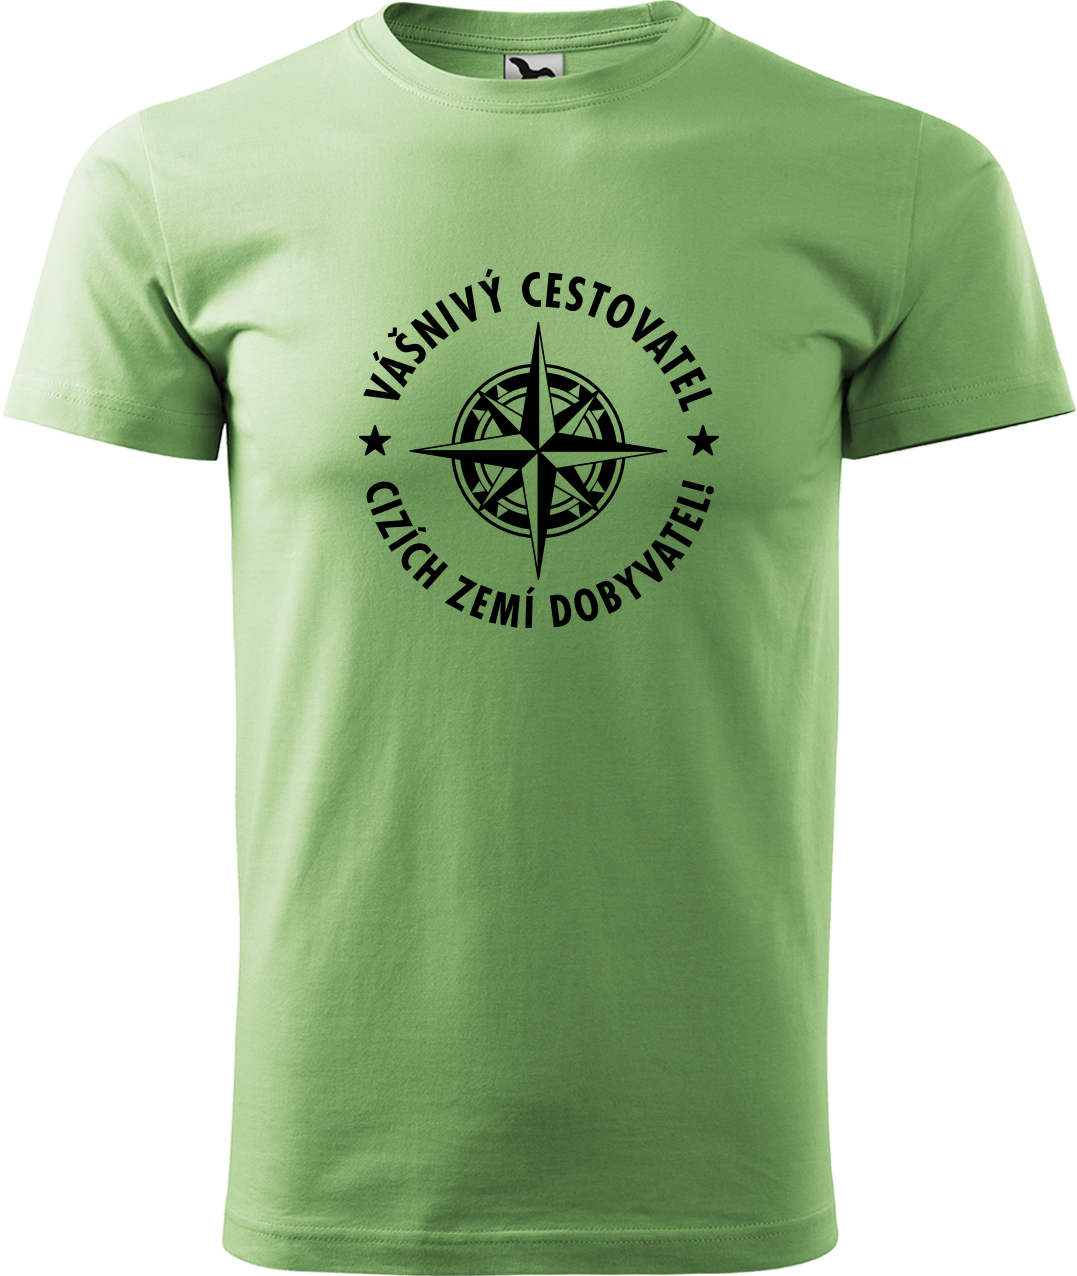 Pánské cestovatelské tričko - Vášnivý cestovatel, cizích zemí dobyvatel Velikost: XL, Barva: Trávově zelená (39), Střih: pánský